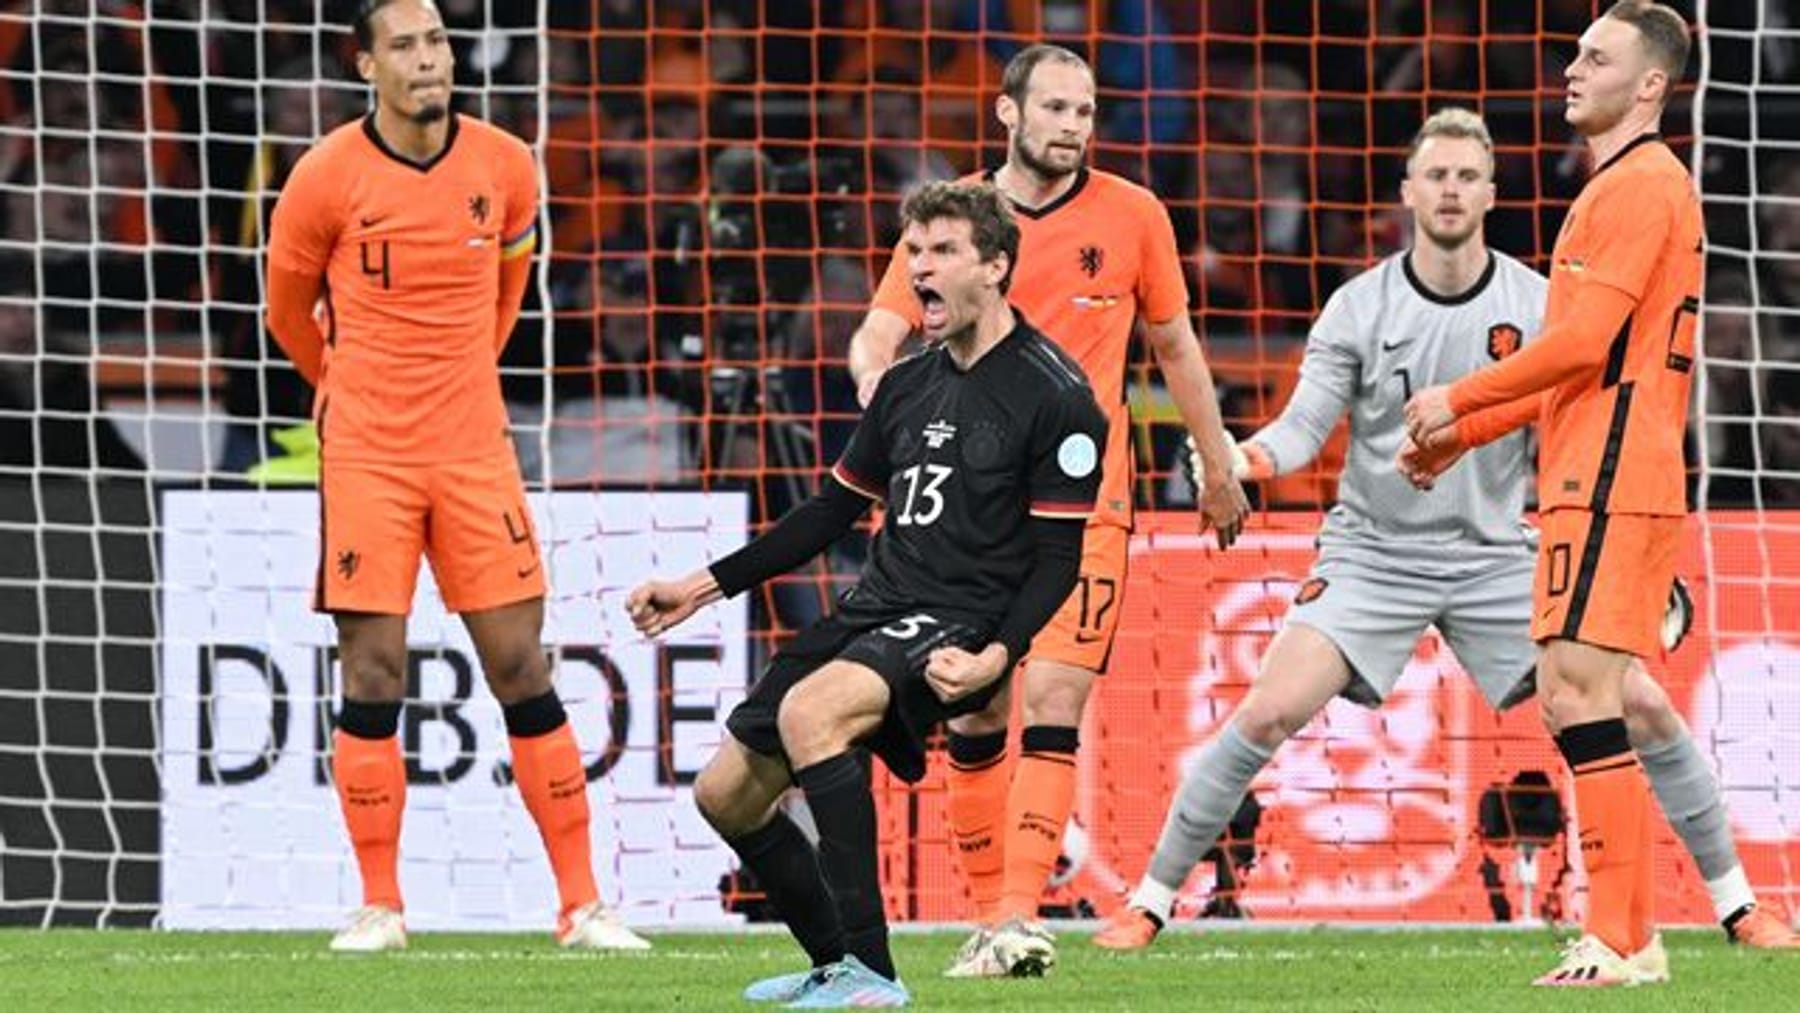 8,82 miljoen keken naar de wedstrijd Nederland-Duitsland